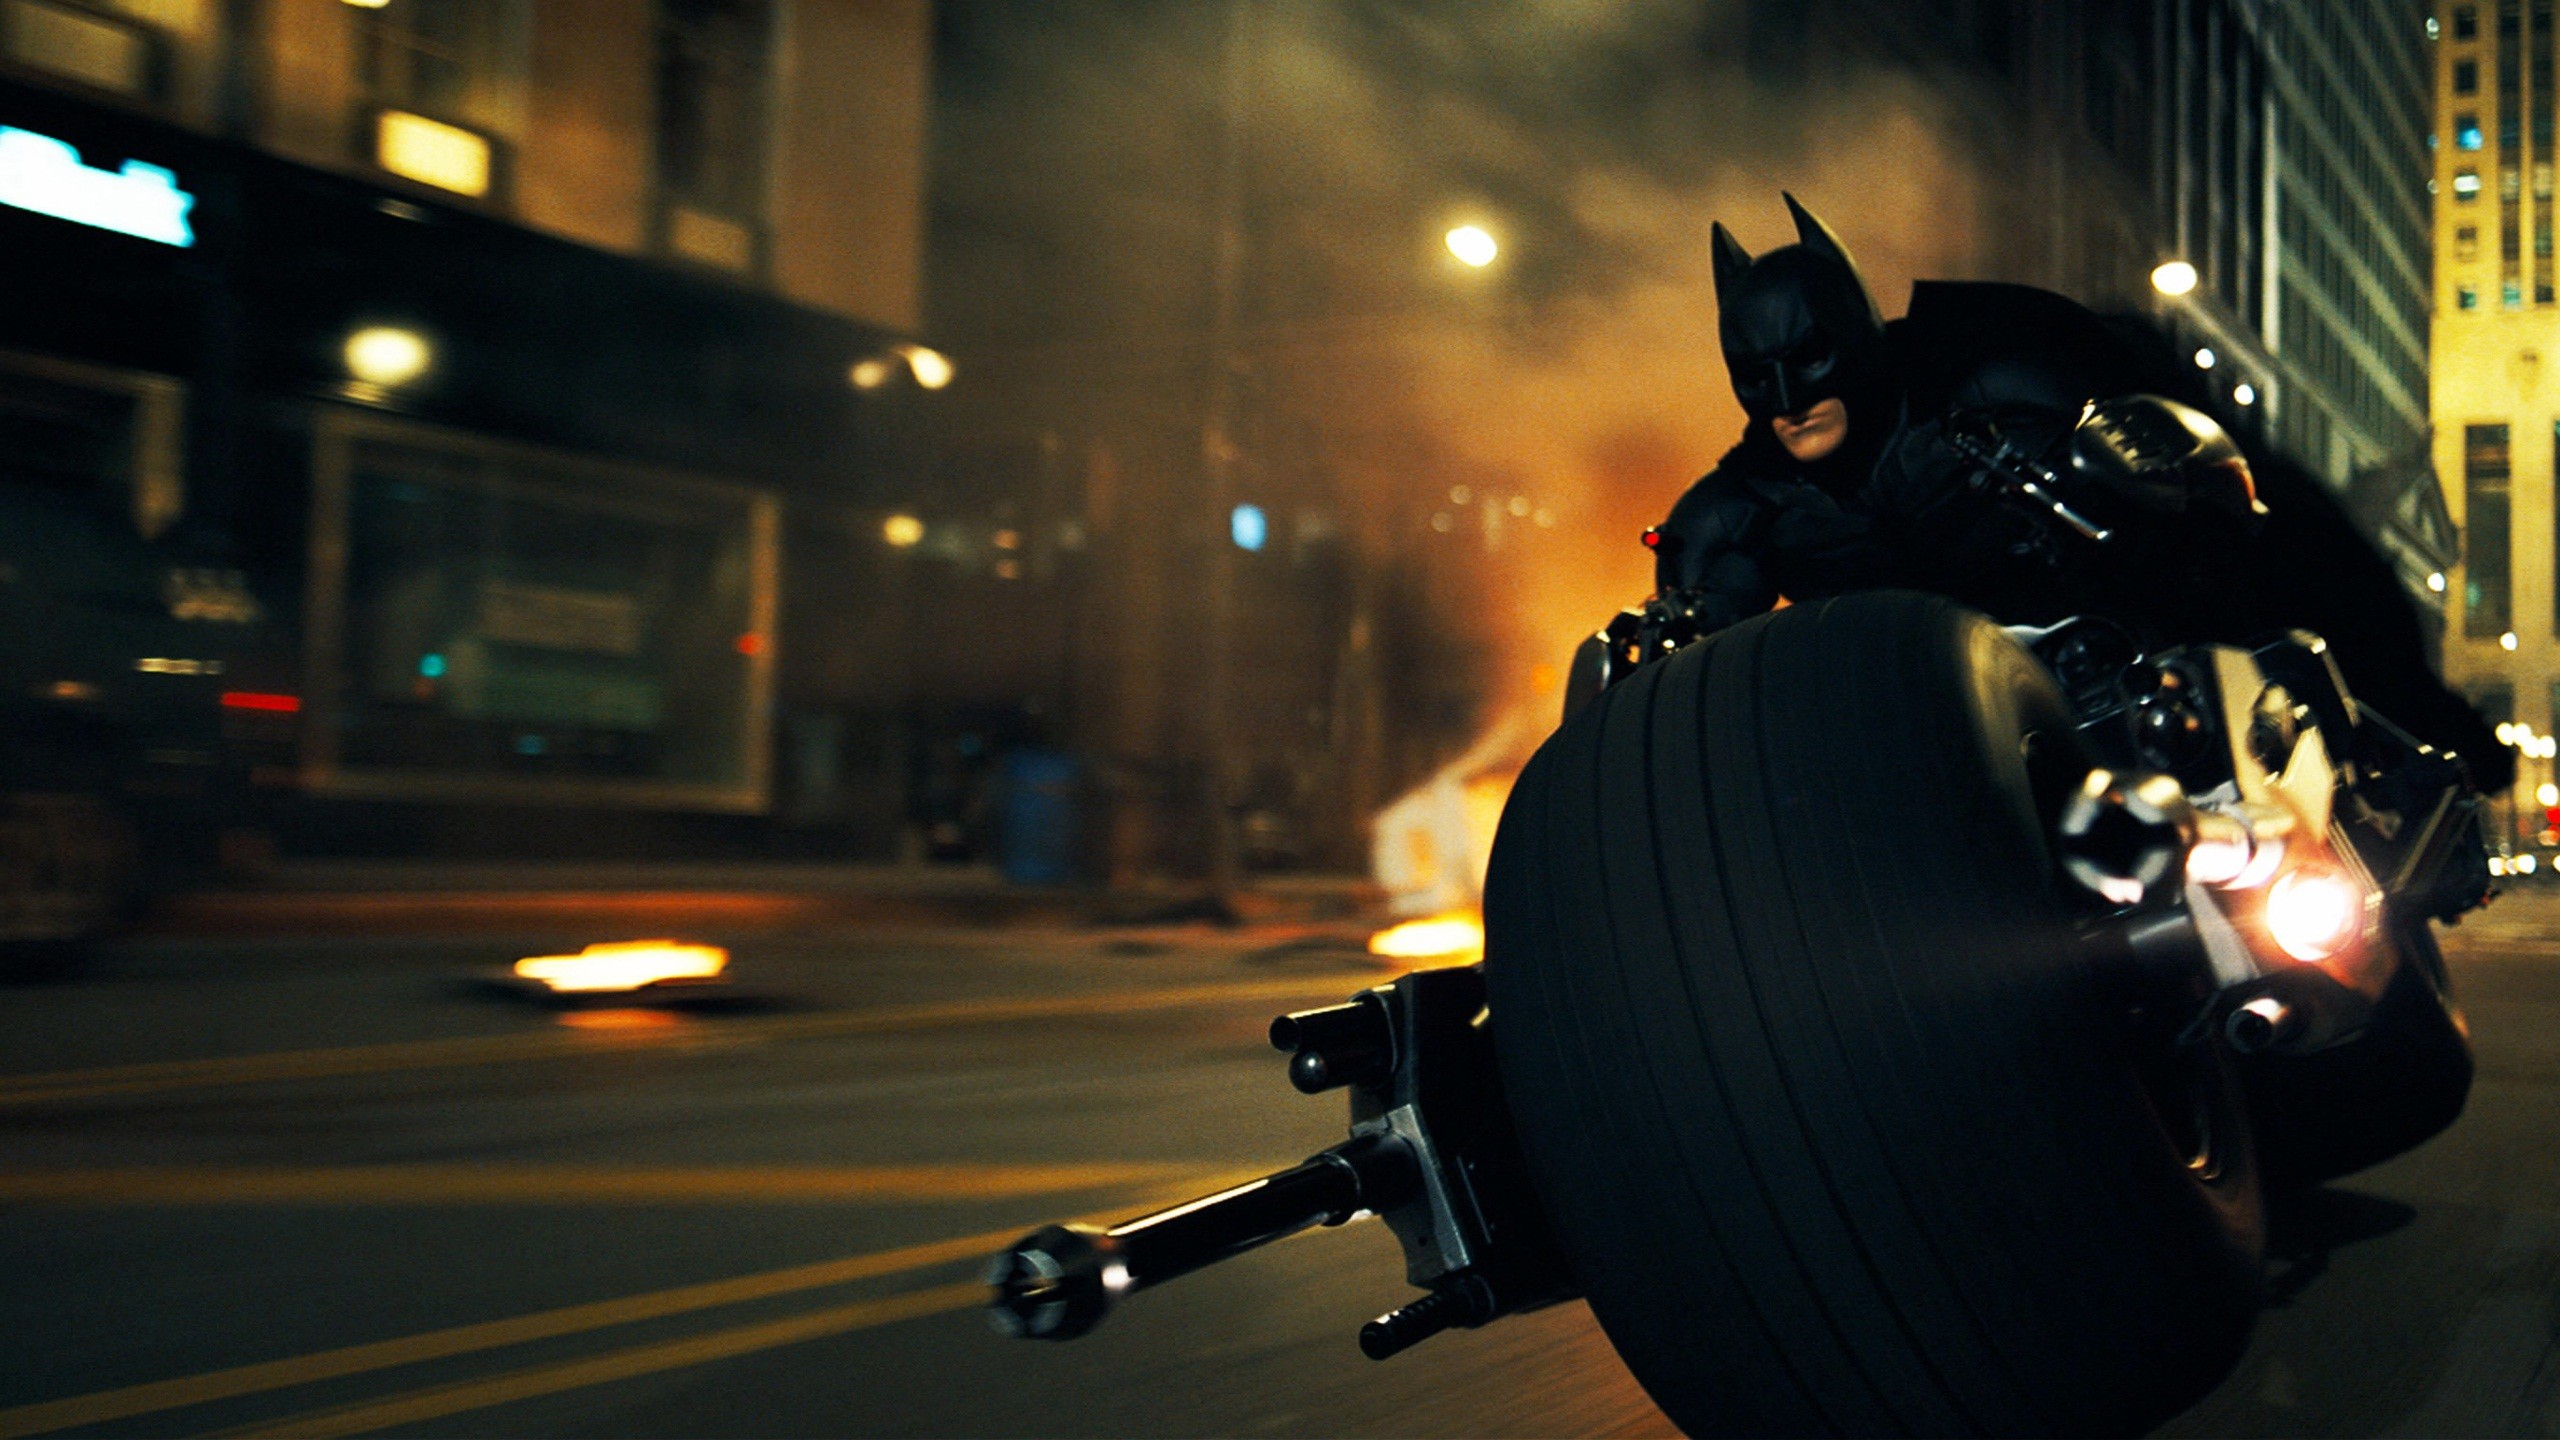 2560x1440 Batman in Dark Knight Rises Wallpapers | HD Wallpapers